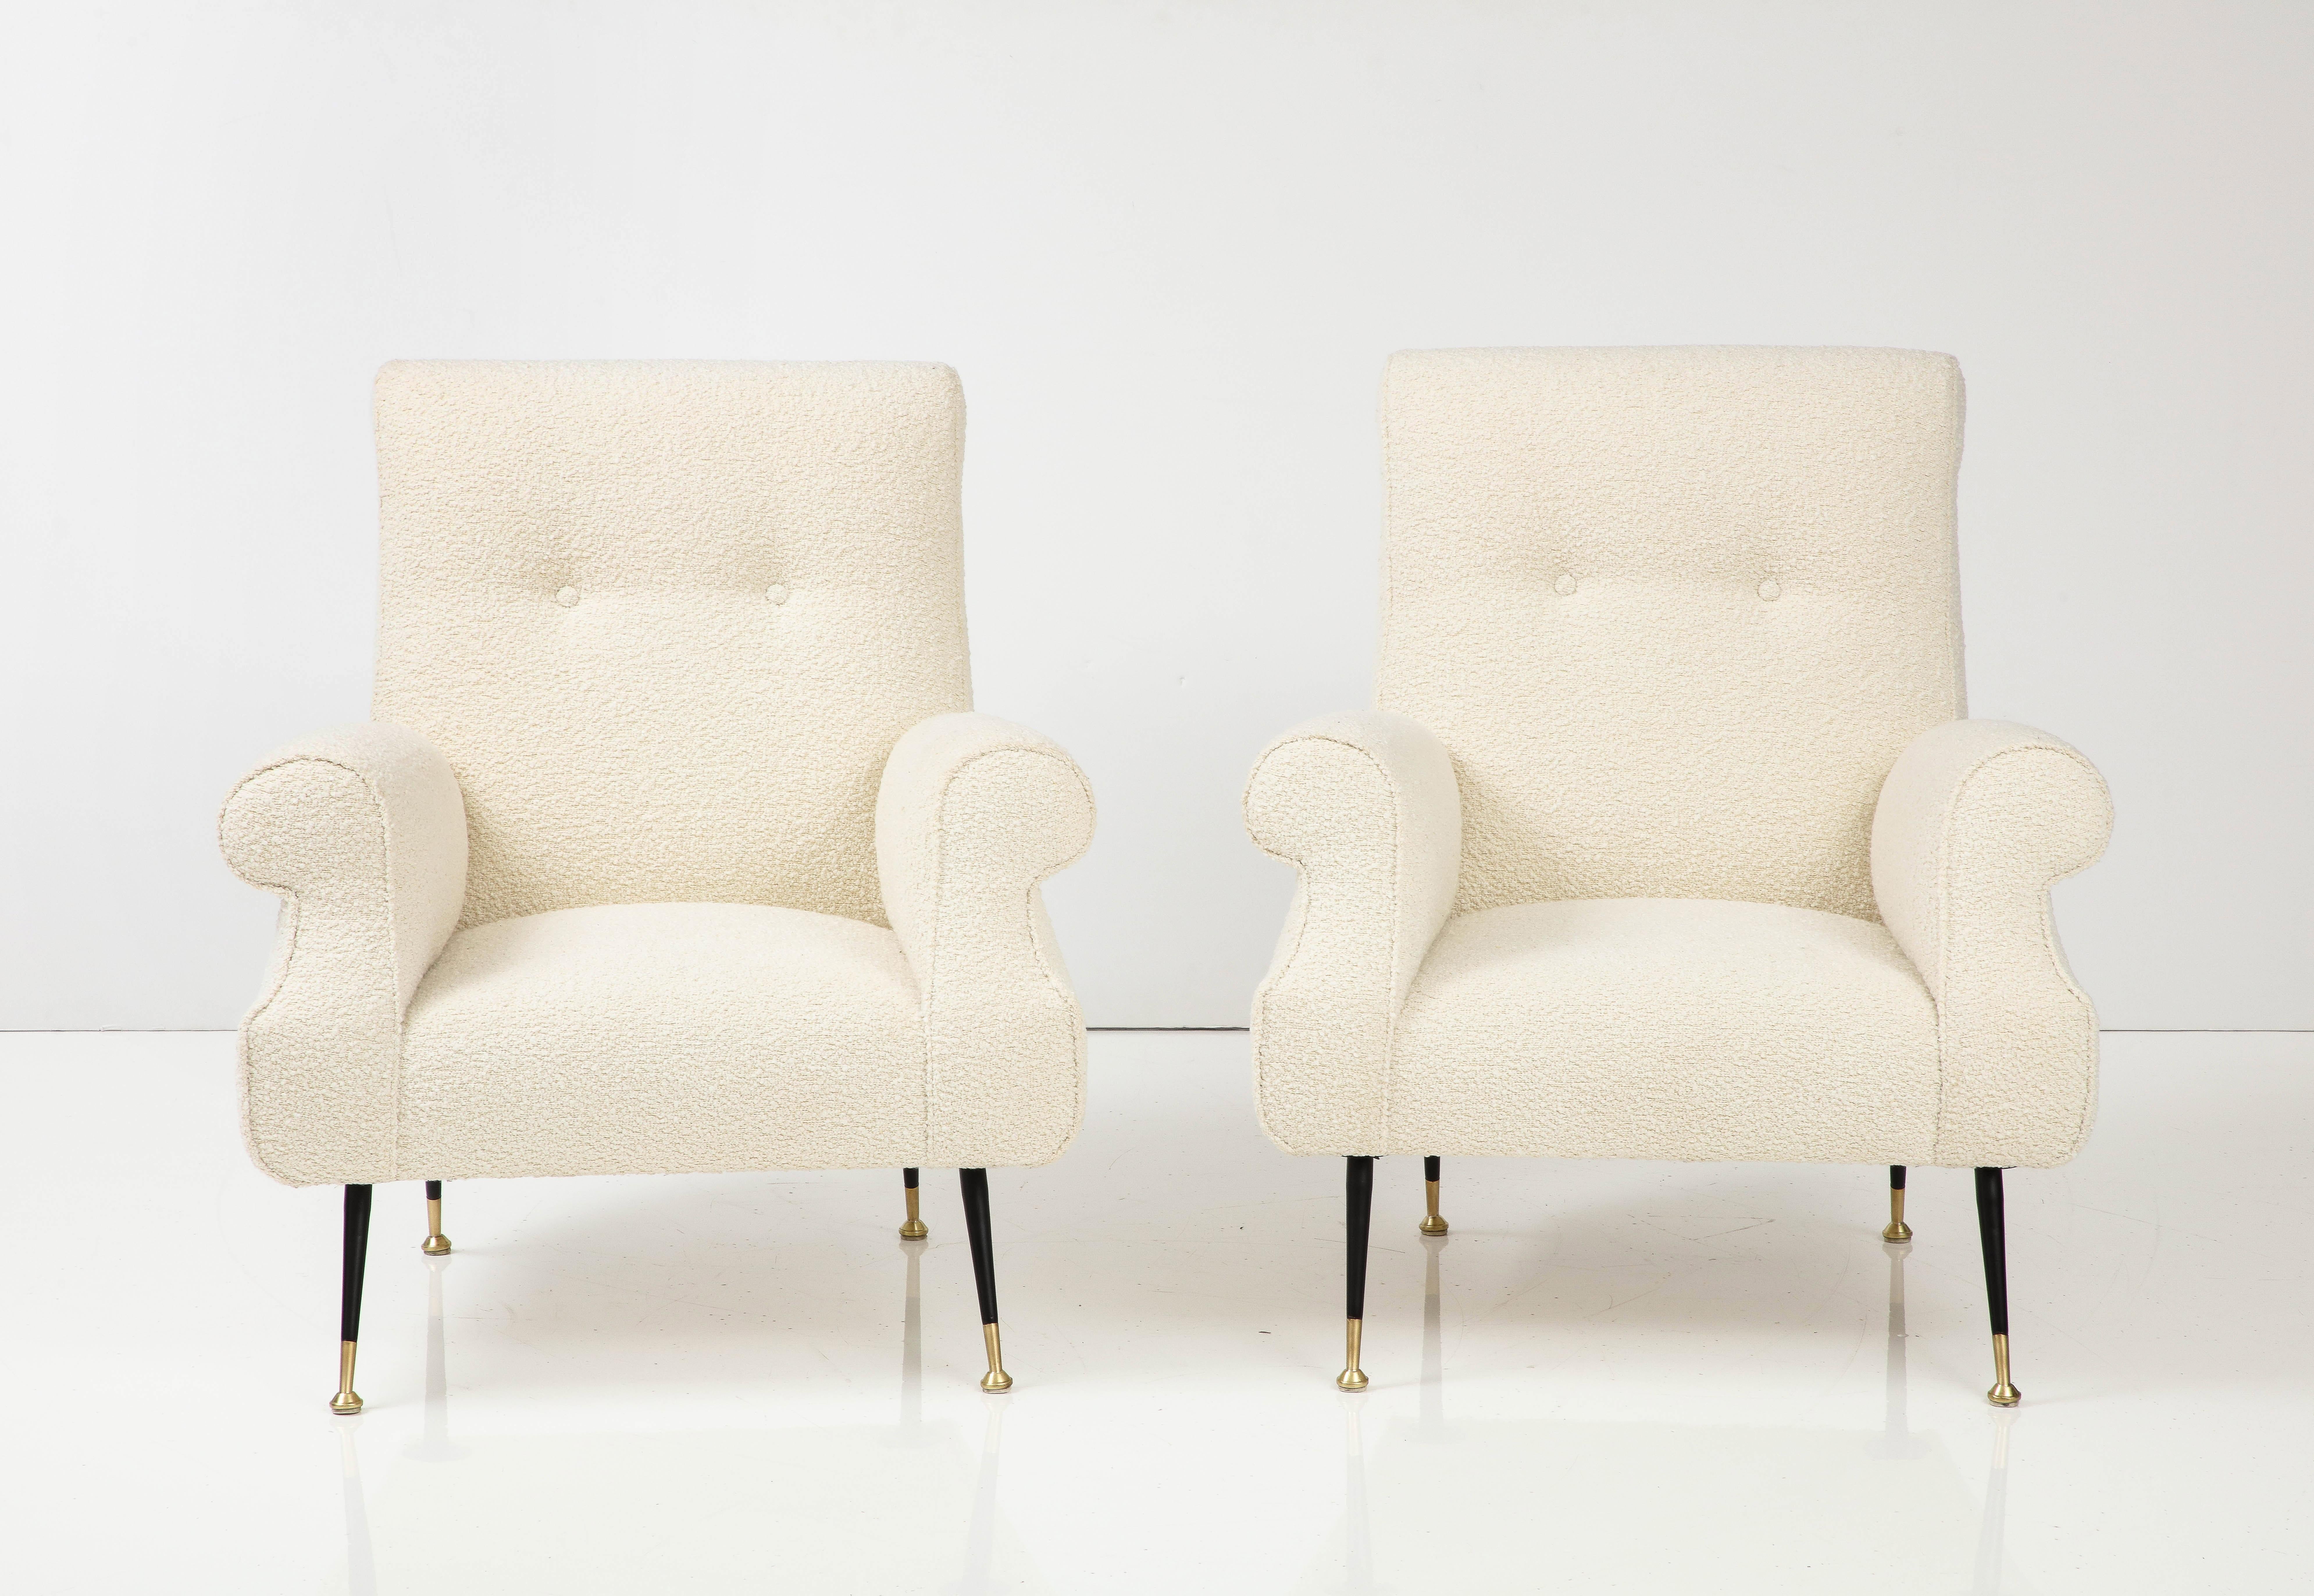 Paire de chaises de salon modernistes italiennes de grande taille, aux formes sculpturales, dont l'assise large et confortable repose sur des pieds fuselés en métal noir et en laiton, d'une grande élégance.  Nouvellement retapissé dans un tissu